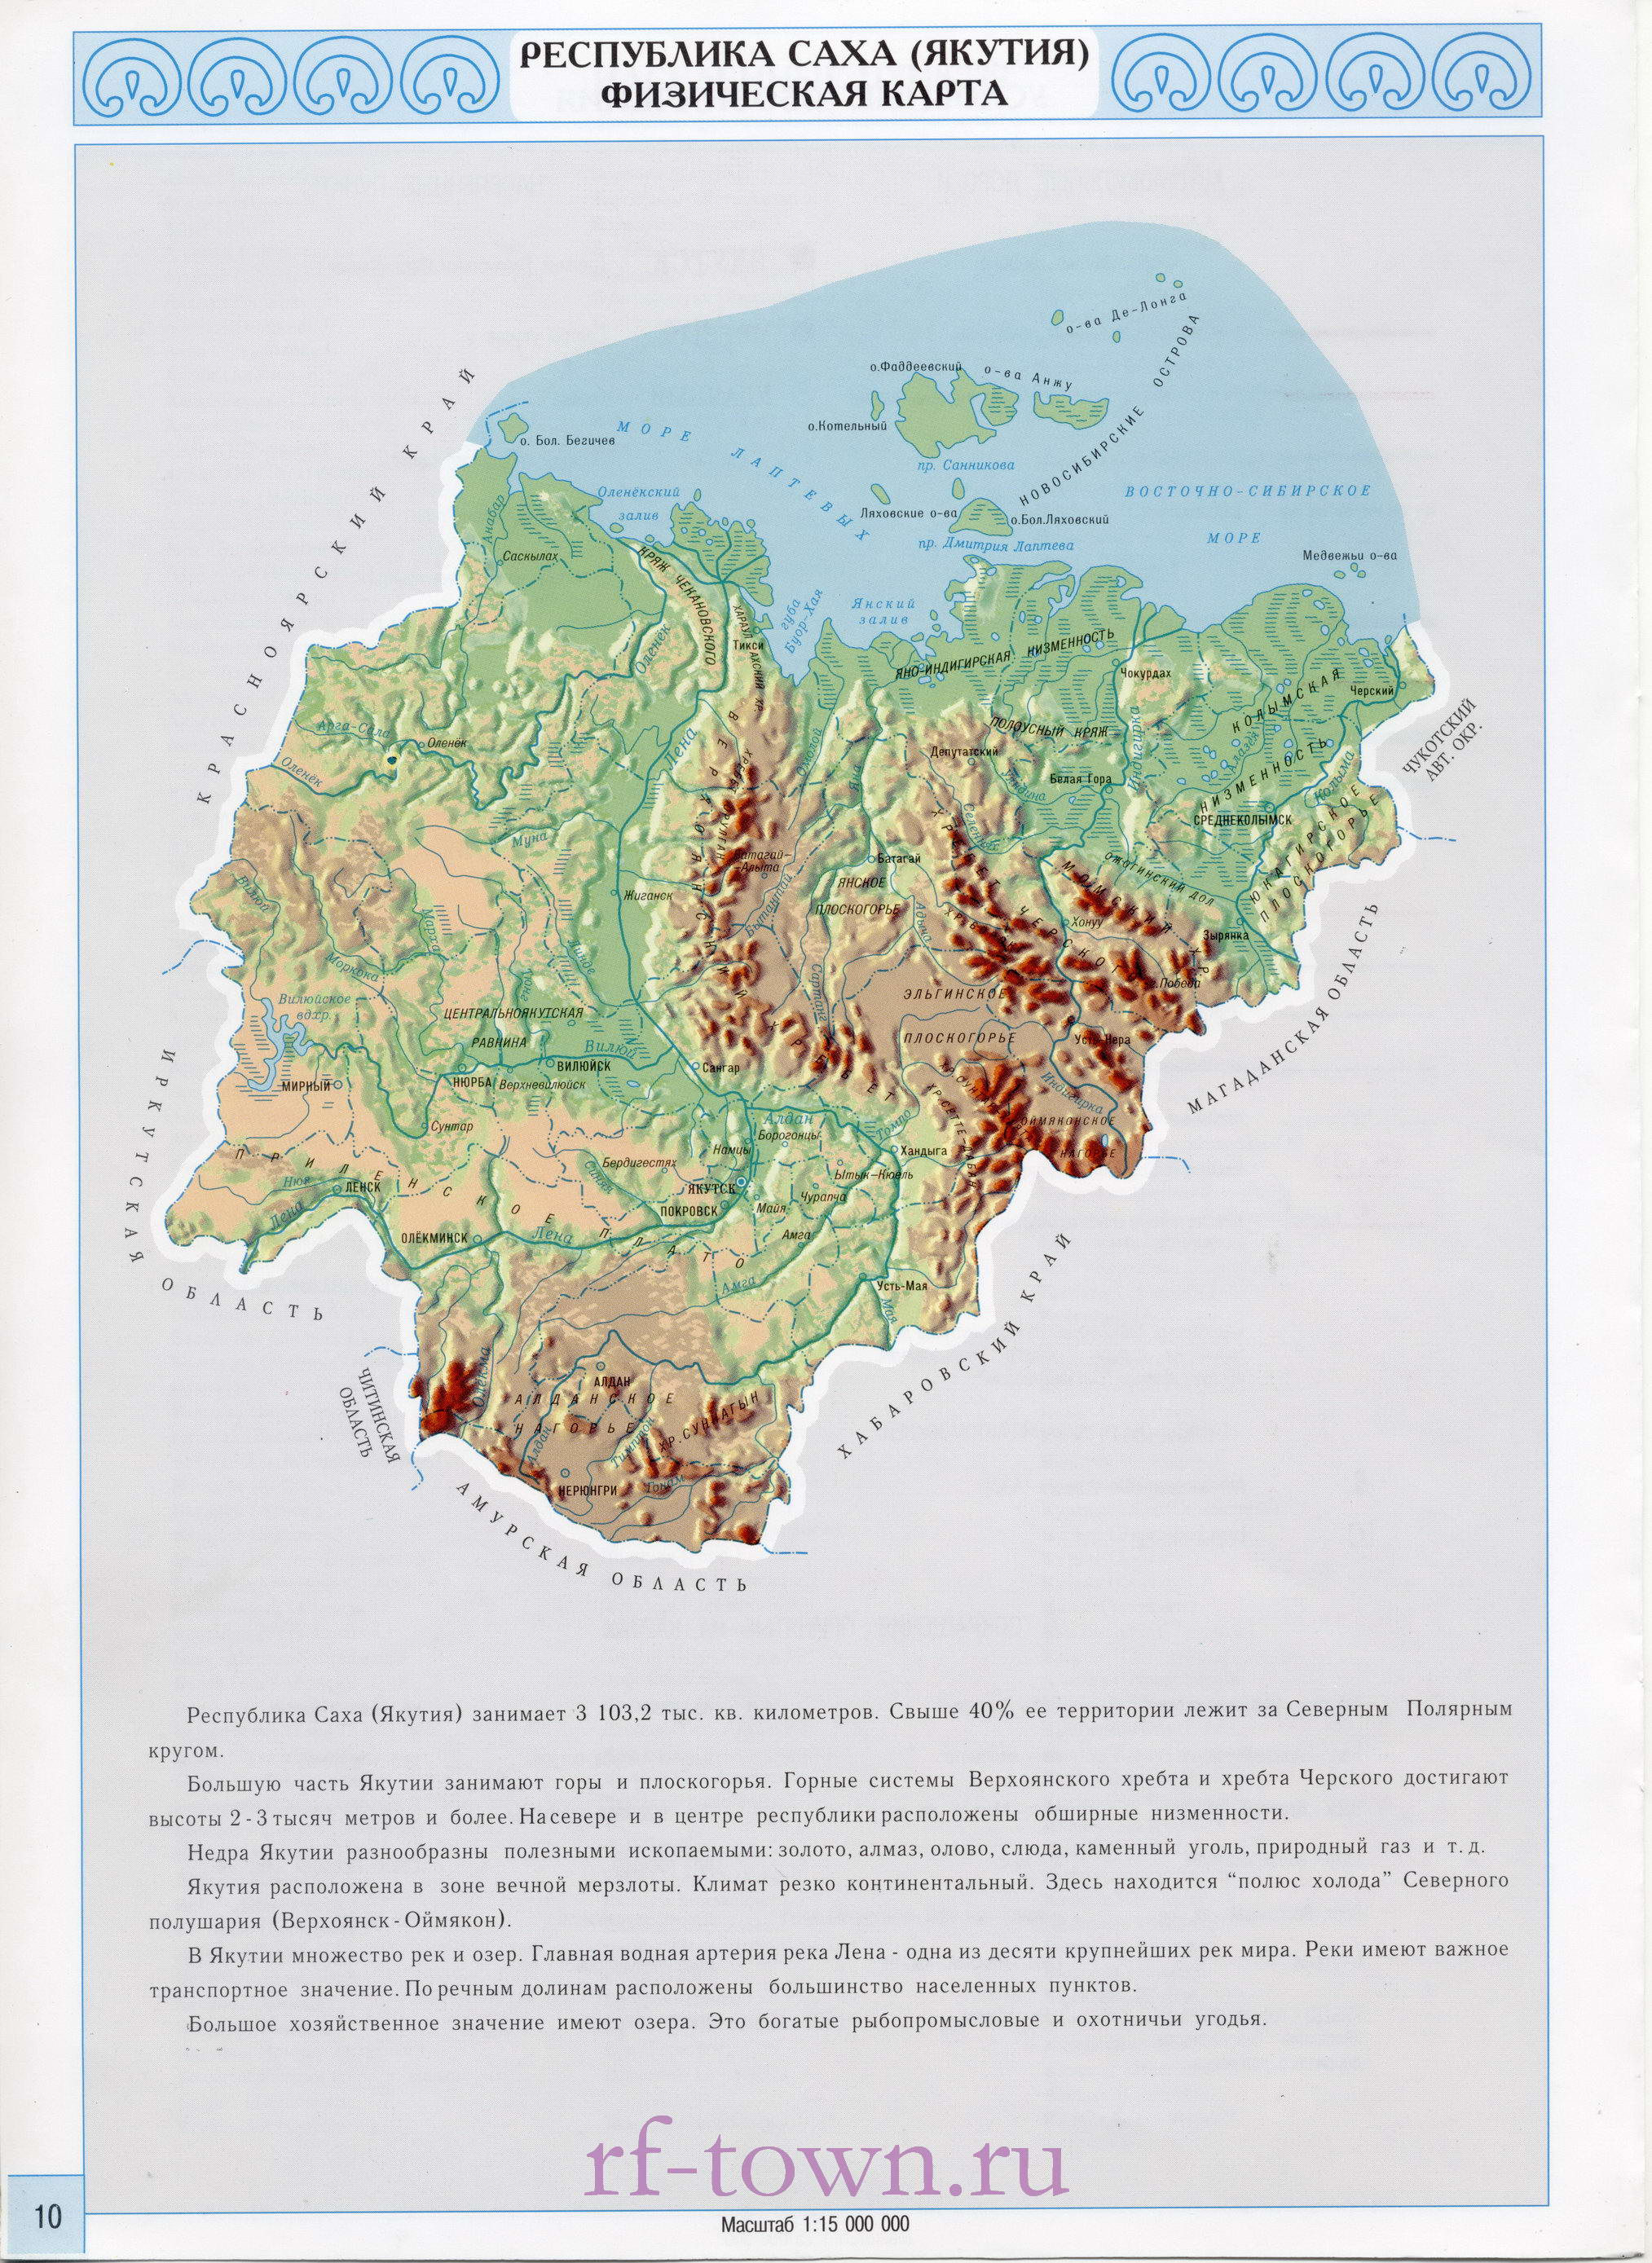  Карта Якутии общегеографическая. Подробная географическая карта республики Саха Якутия масштаба 1см:150км, A0 - 